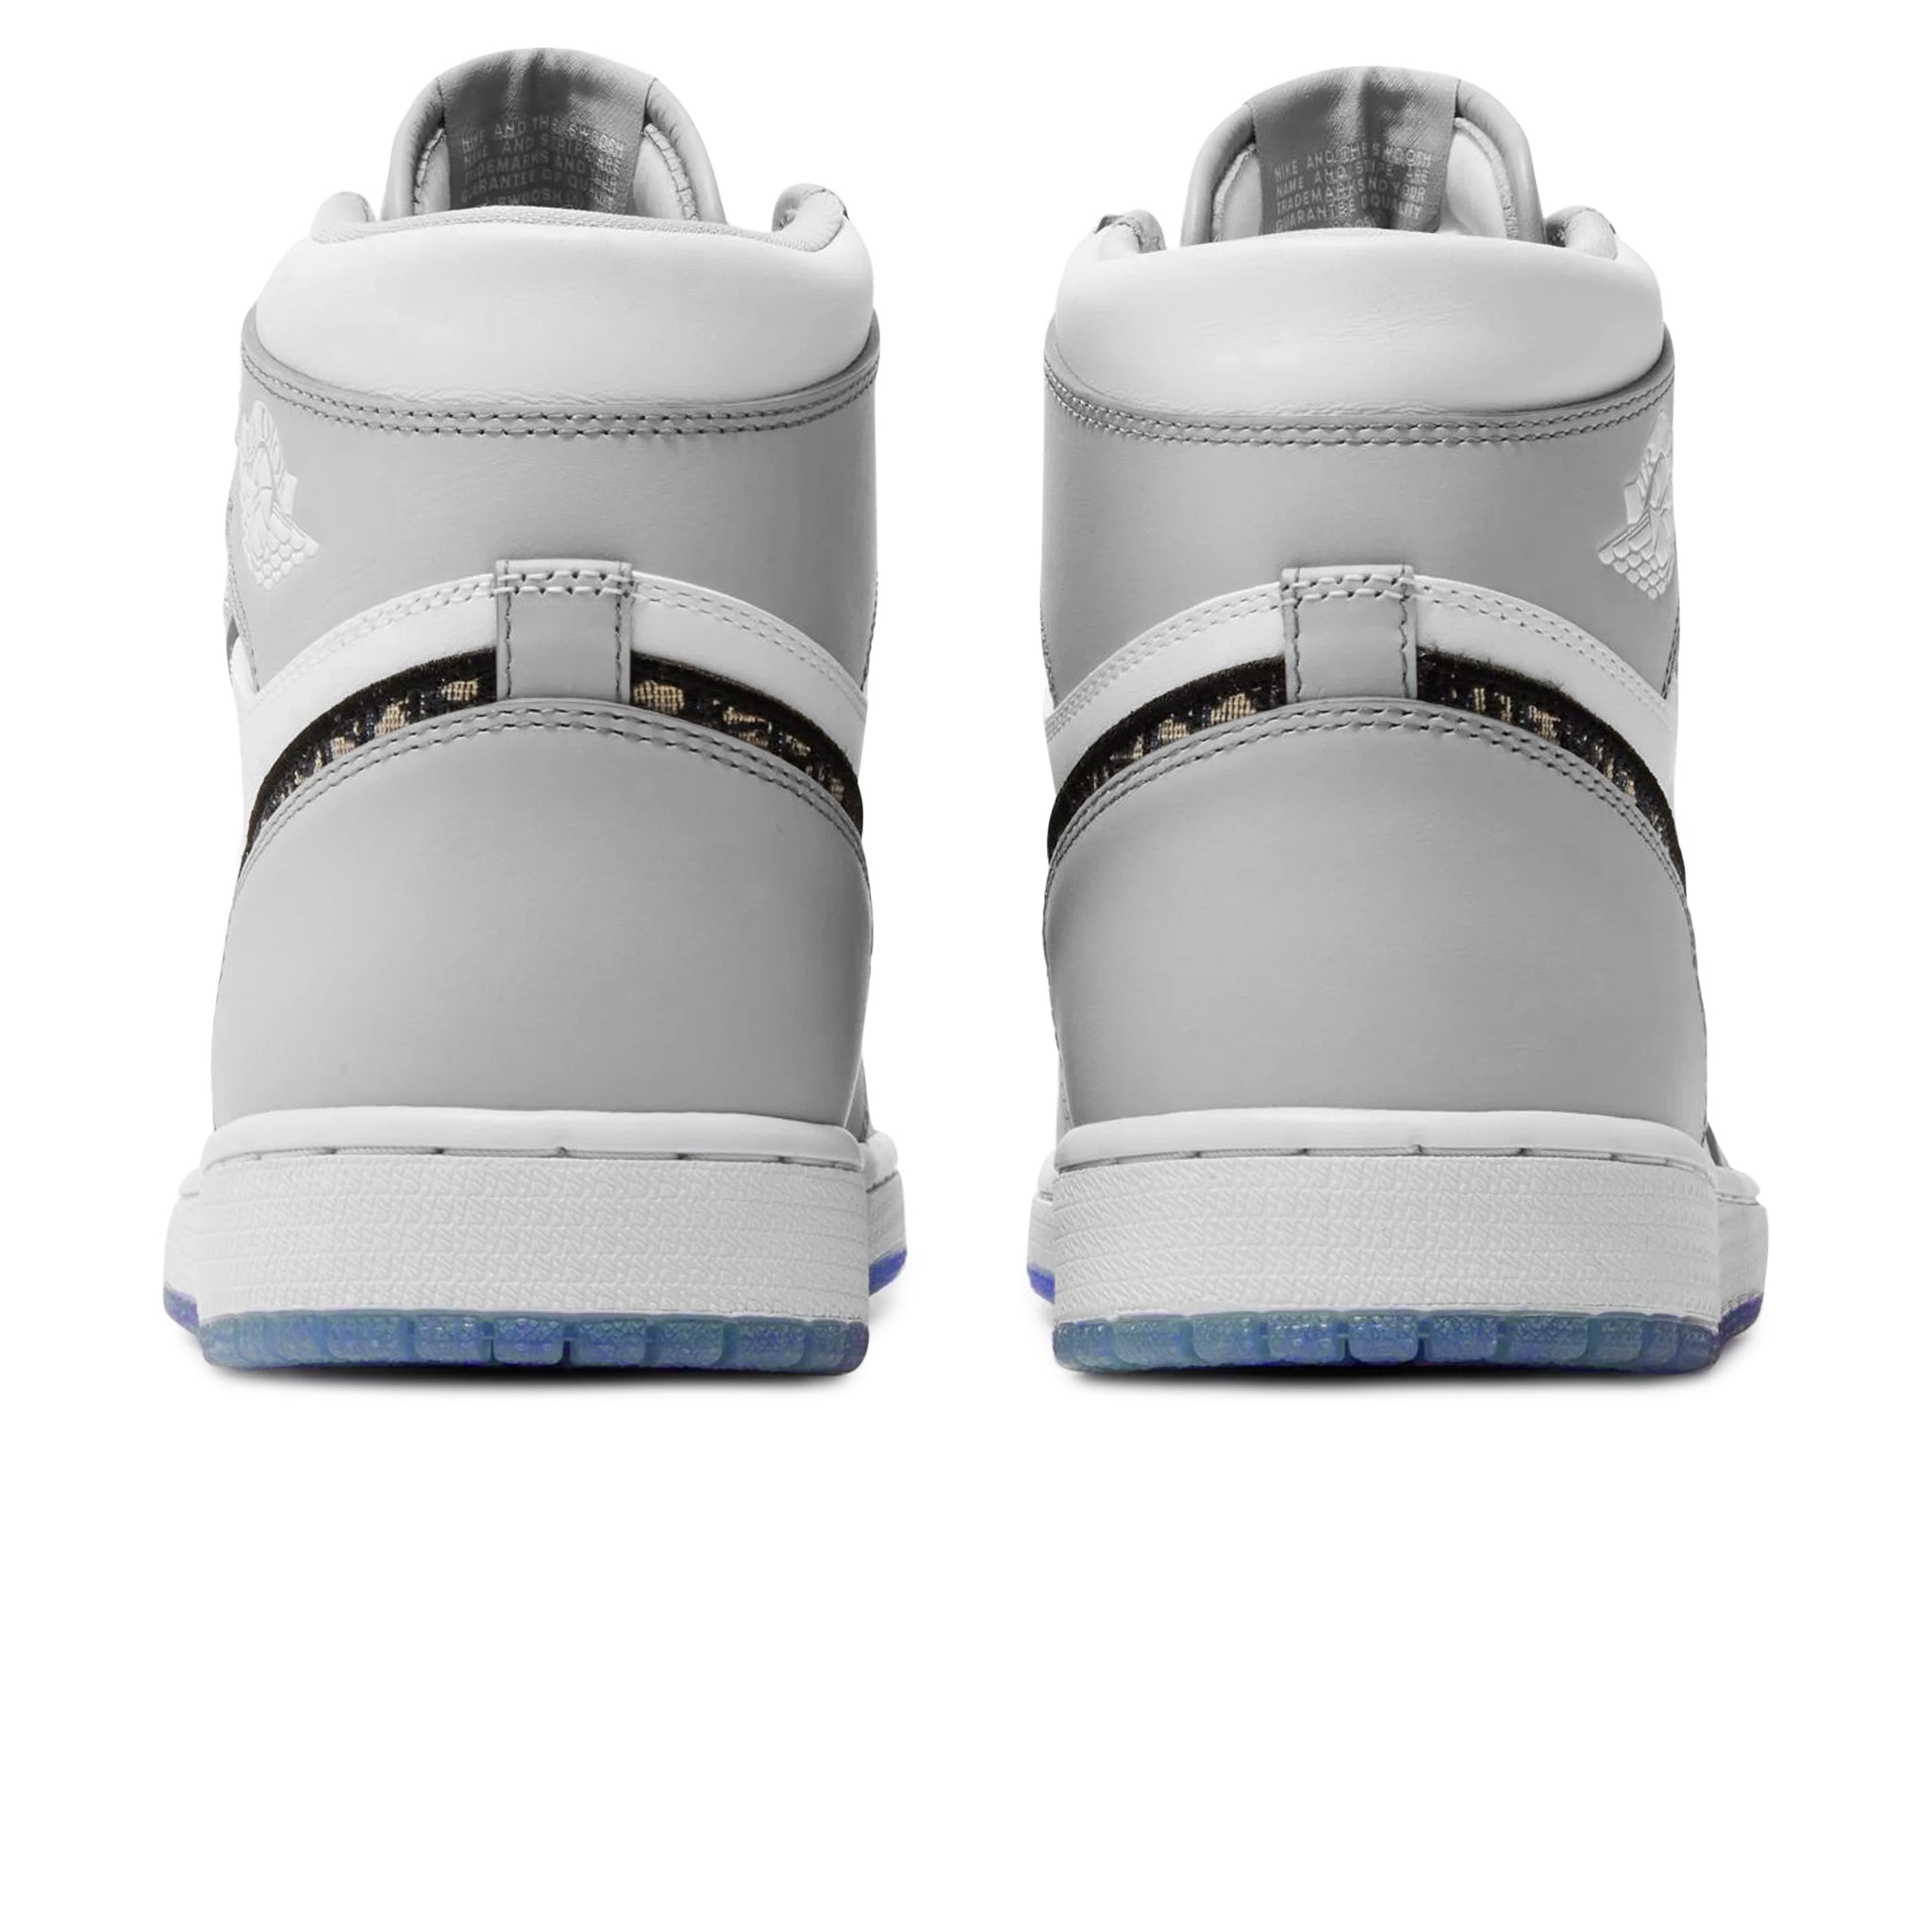 Giày Nike Air Jordan 1 Low x Dior Chuẩn Cao Cấp Giá Rẻ